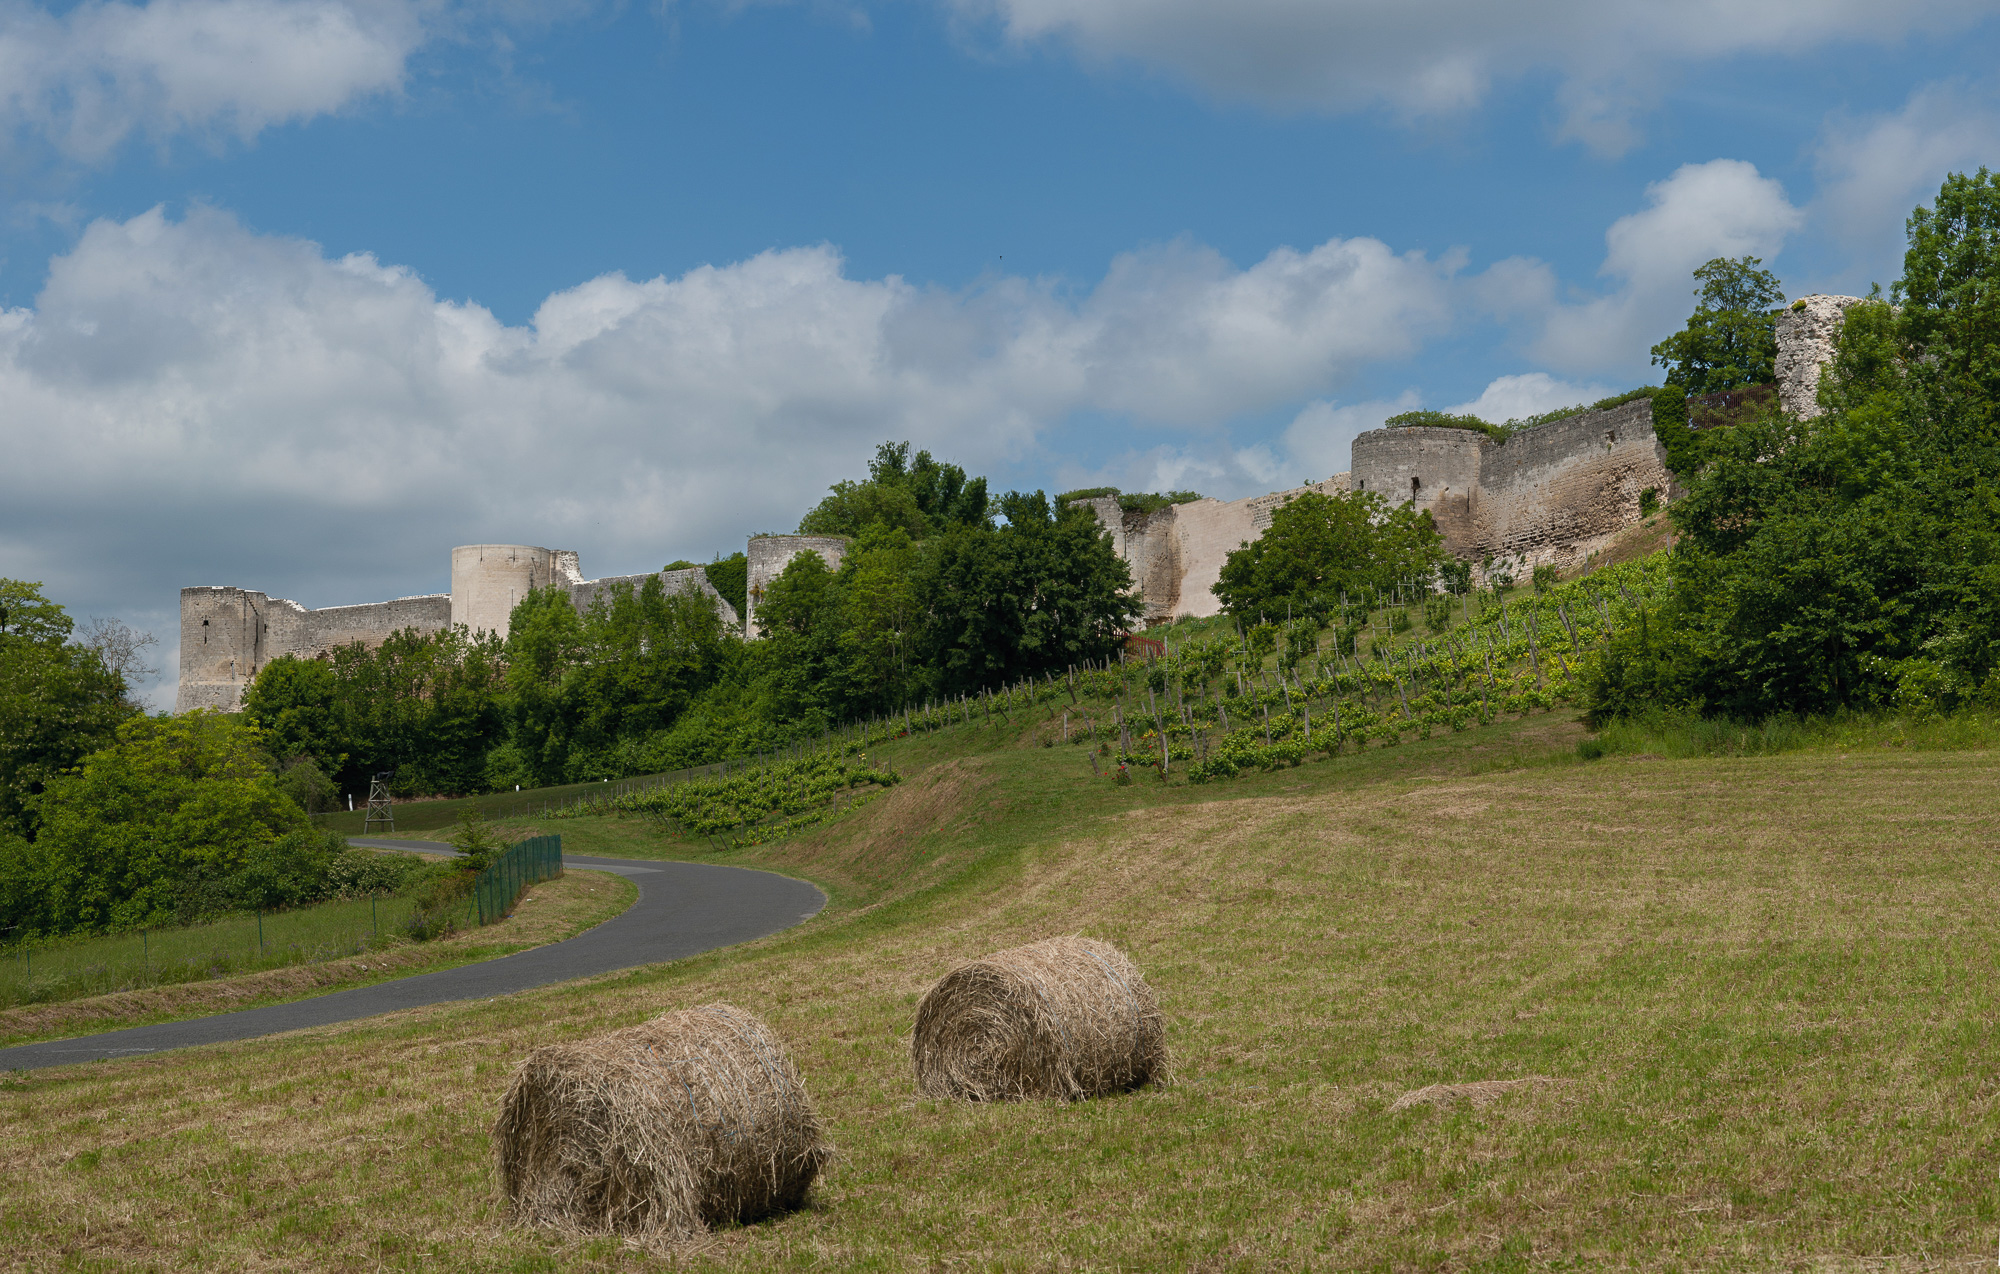 Vestiges du Château-Fort du XIII ème siècle. L'enceinte fortifiée (1700 m de long) domine de ses 60 mètres la vallée de l'Ailette et les vignobles du terroir.